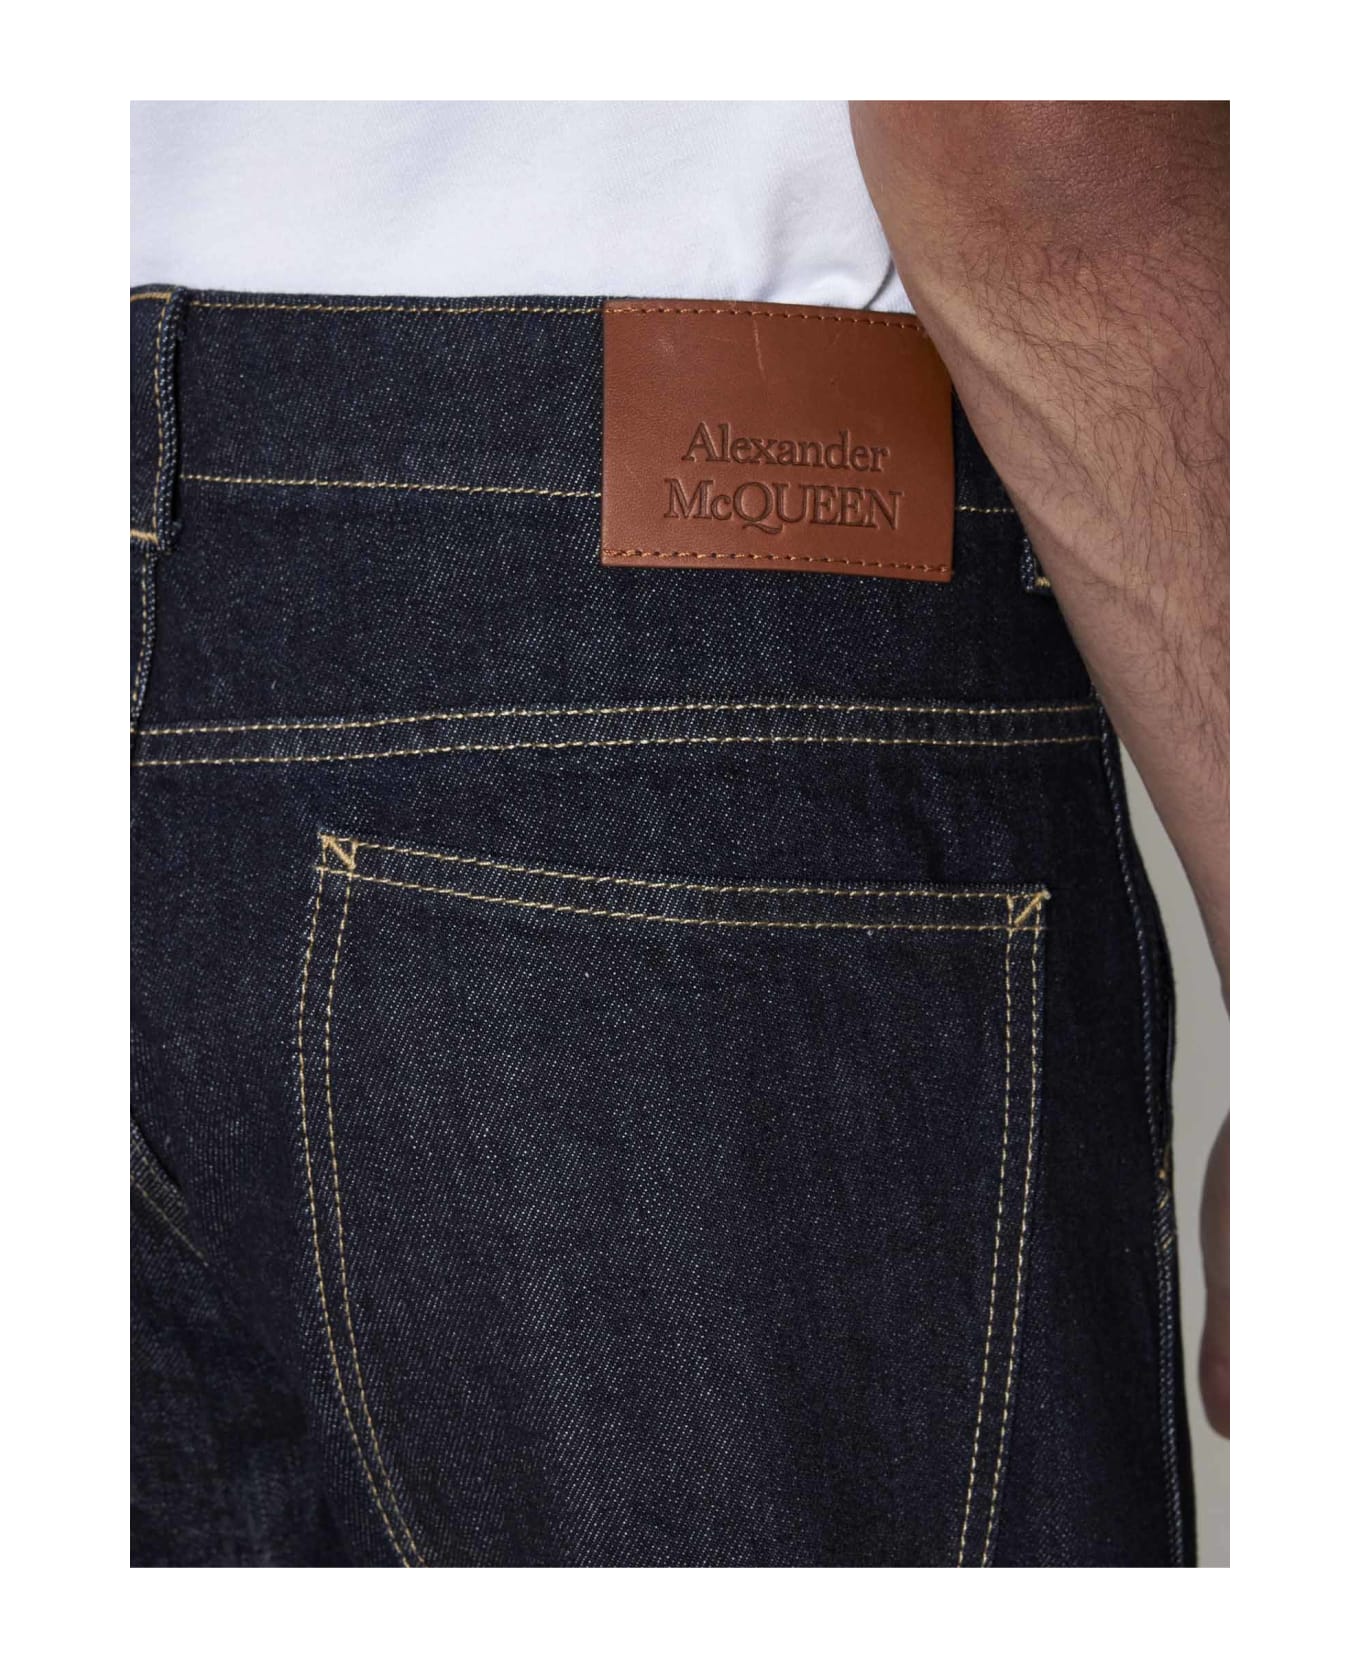 Alexander McQueen Straight Buttoned Jeans - Indigo デニム